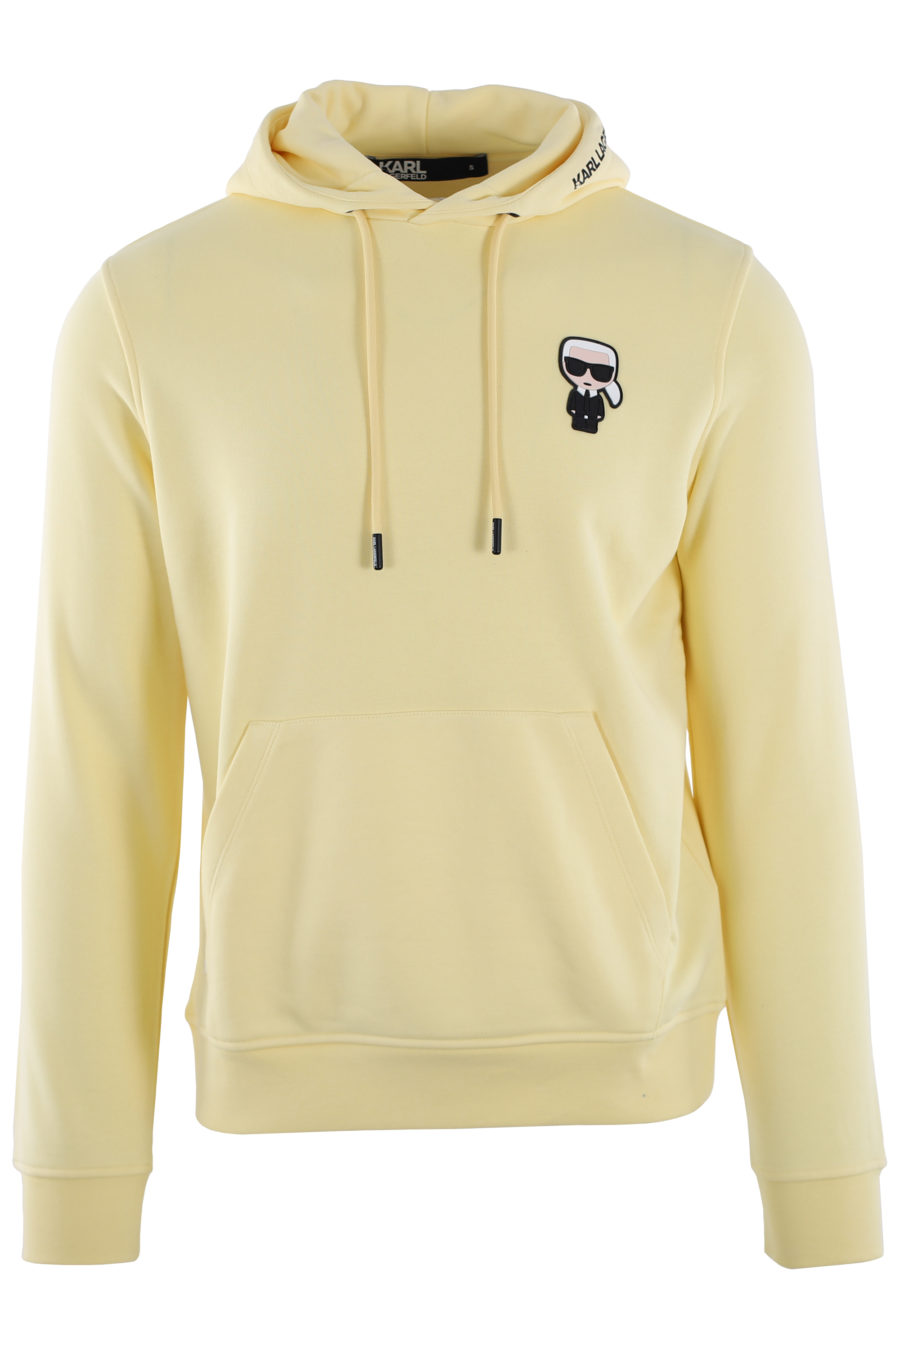 Yellow hooded sweatshirt with rubber logo - IMG 0444